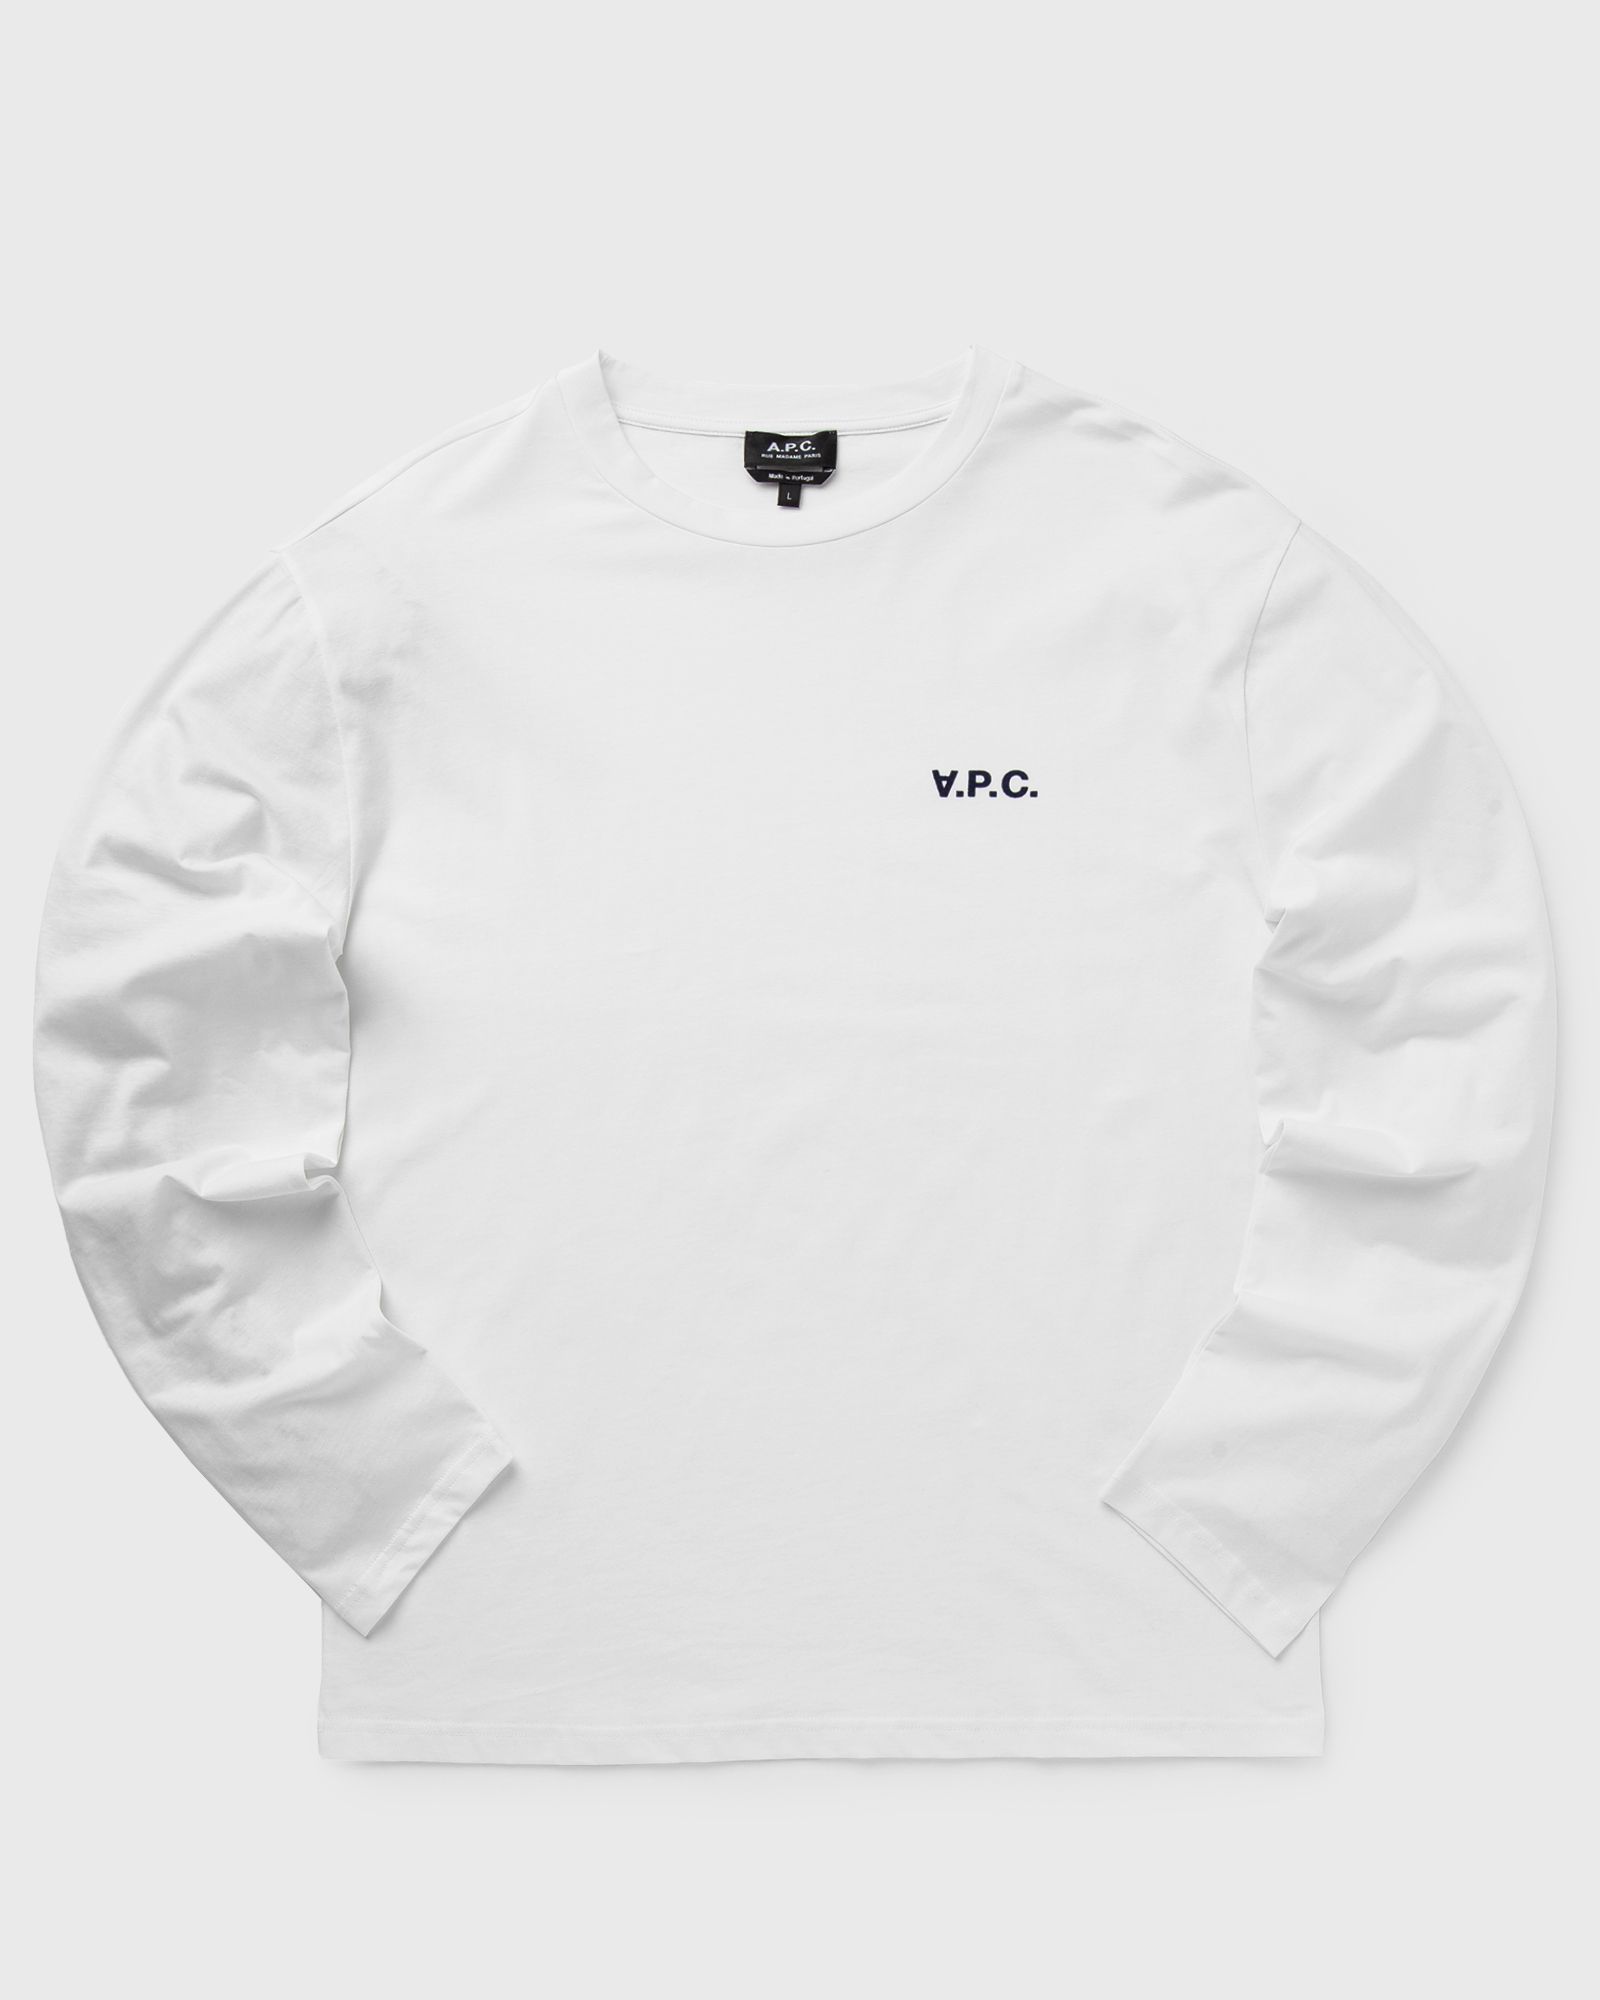 A.P.C. - t-shirt frankie men longsleeves white in größe:s